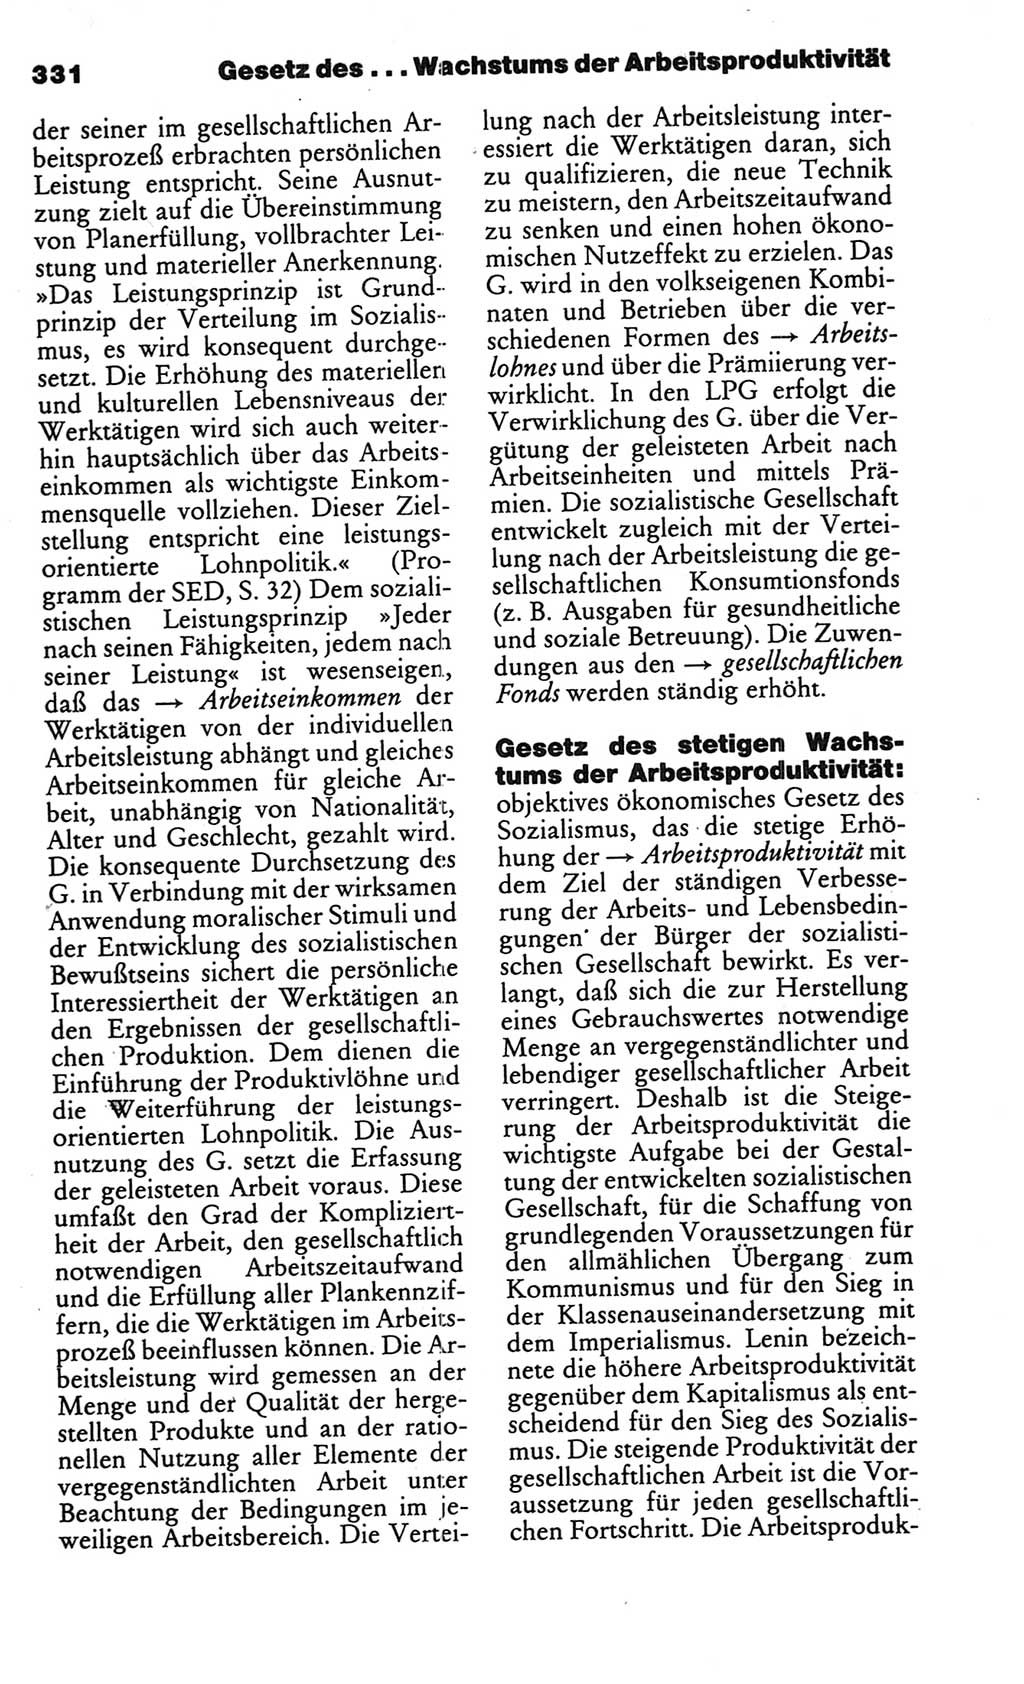 Kleines politisches Wörterbuch [Deutsche Demokratische Republik (DDR)] 1986, Seite 331 (Kl. pol. Wb. DDR 1986, S. 331)